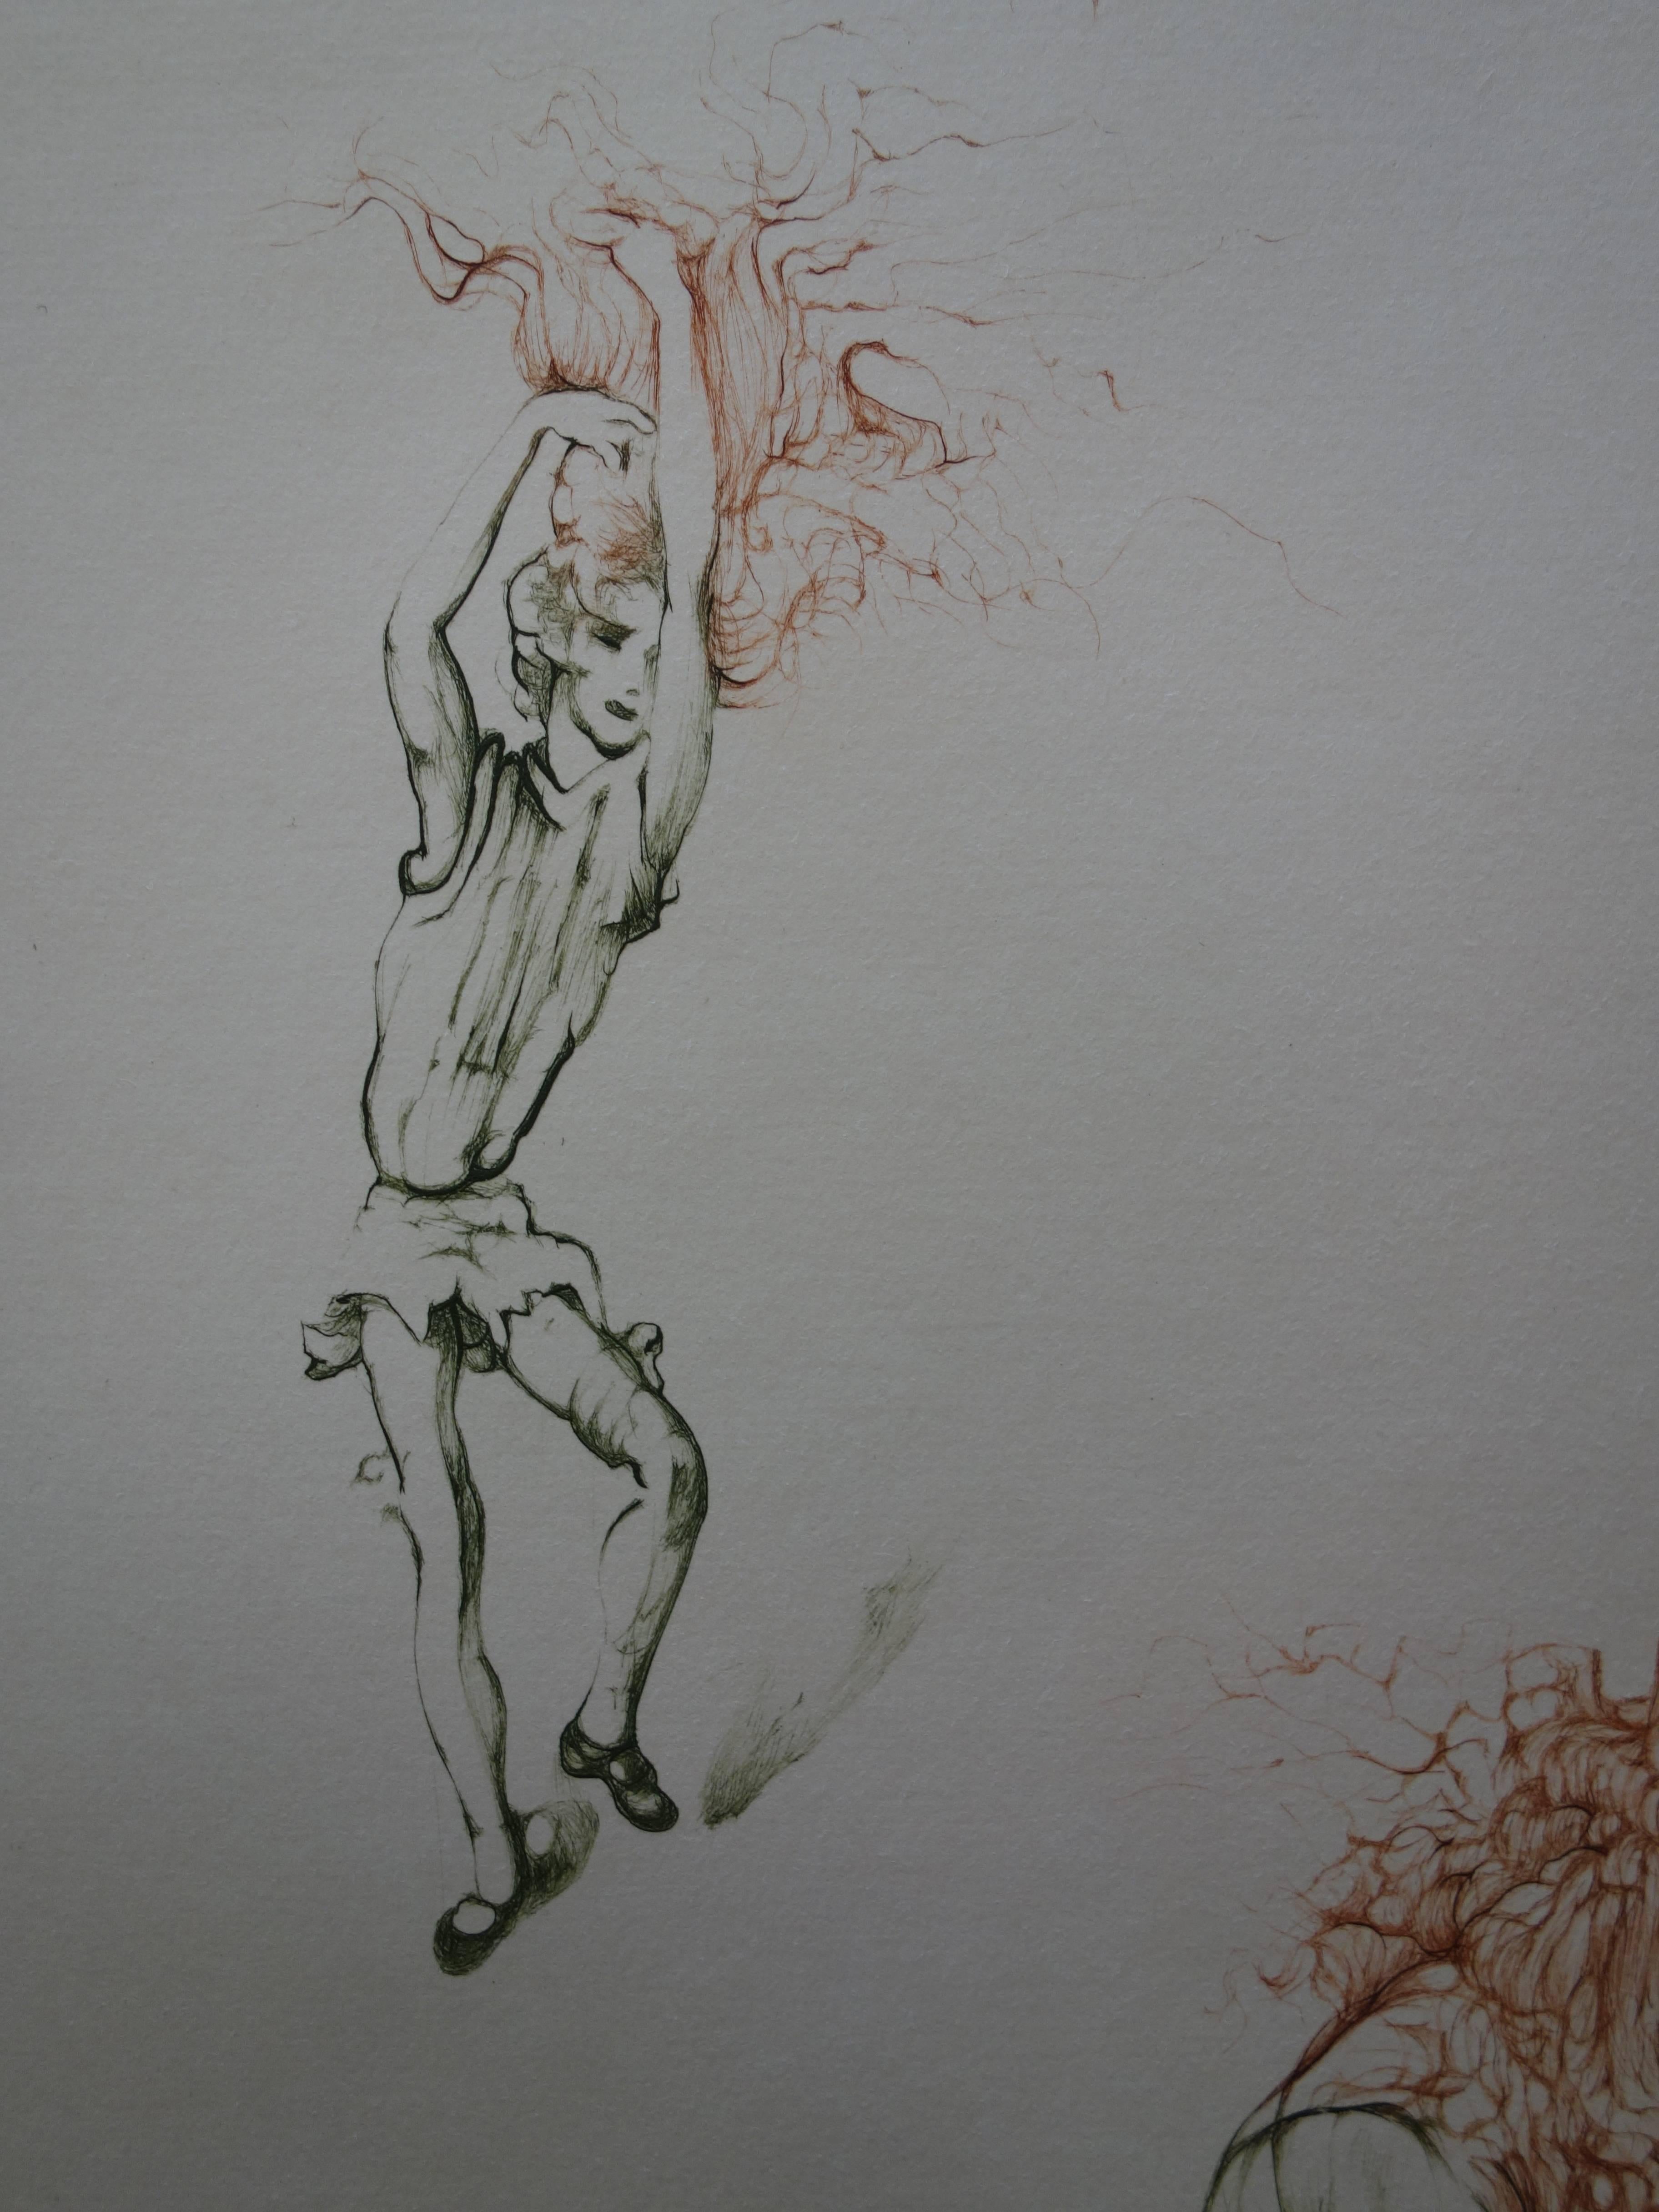 Hans BELLMER
Une fille aux cheveux roux en feu

Gravure originale
Signé à la main au crayon
Numéroté sur 150 exemplaires
Sur vellum d'Arches 65 x 50 cm (c. 26 c 20in)

Excellent état